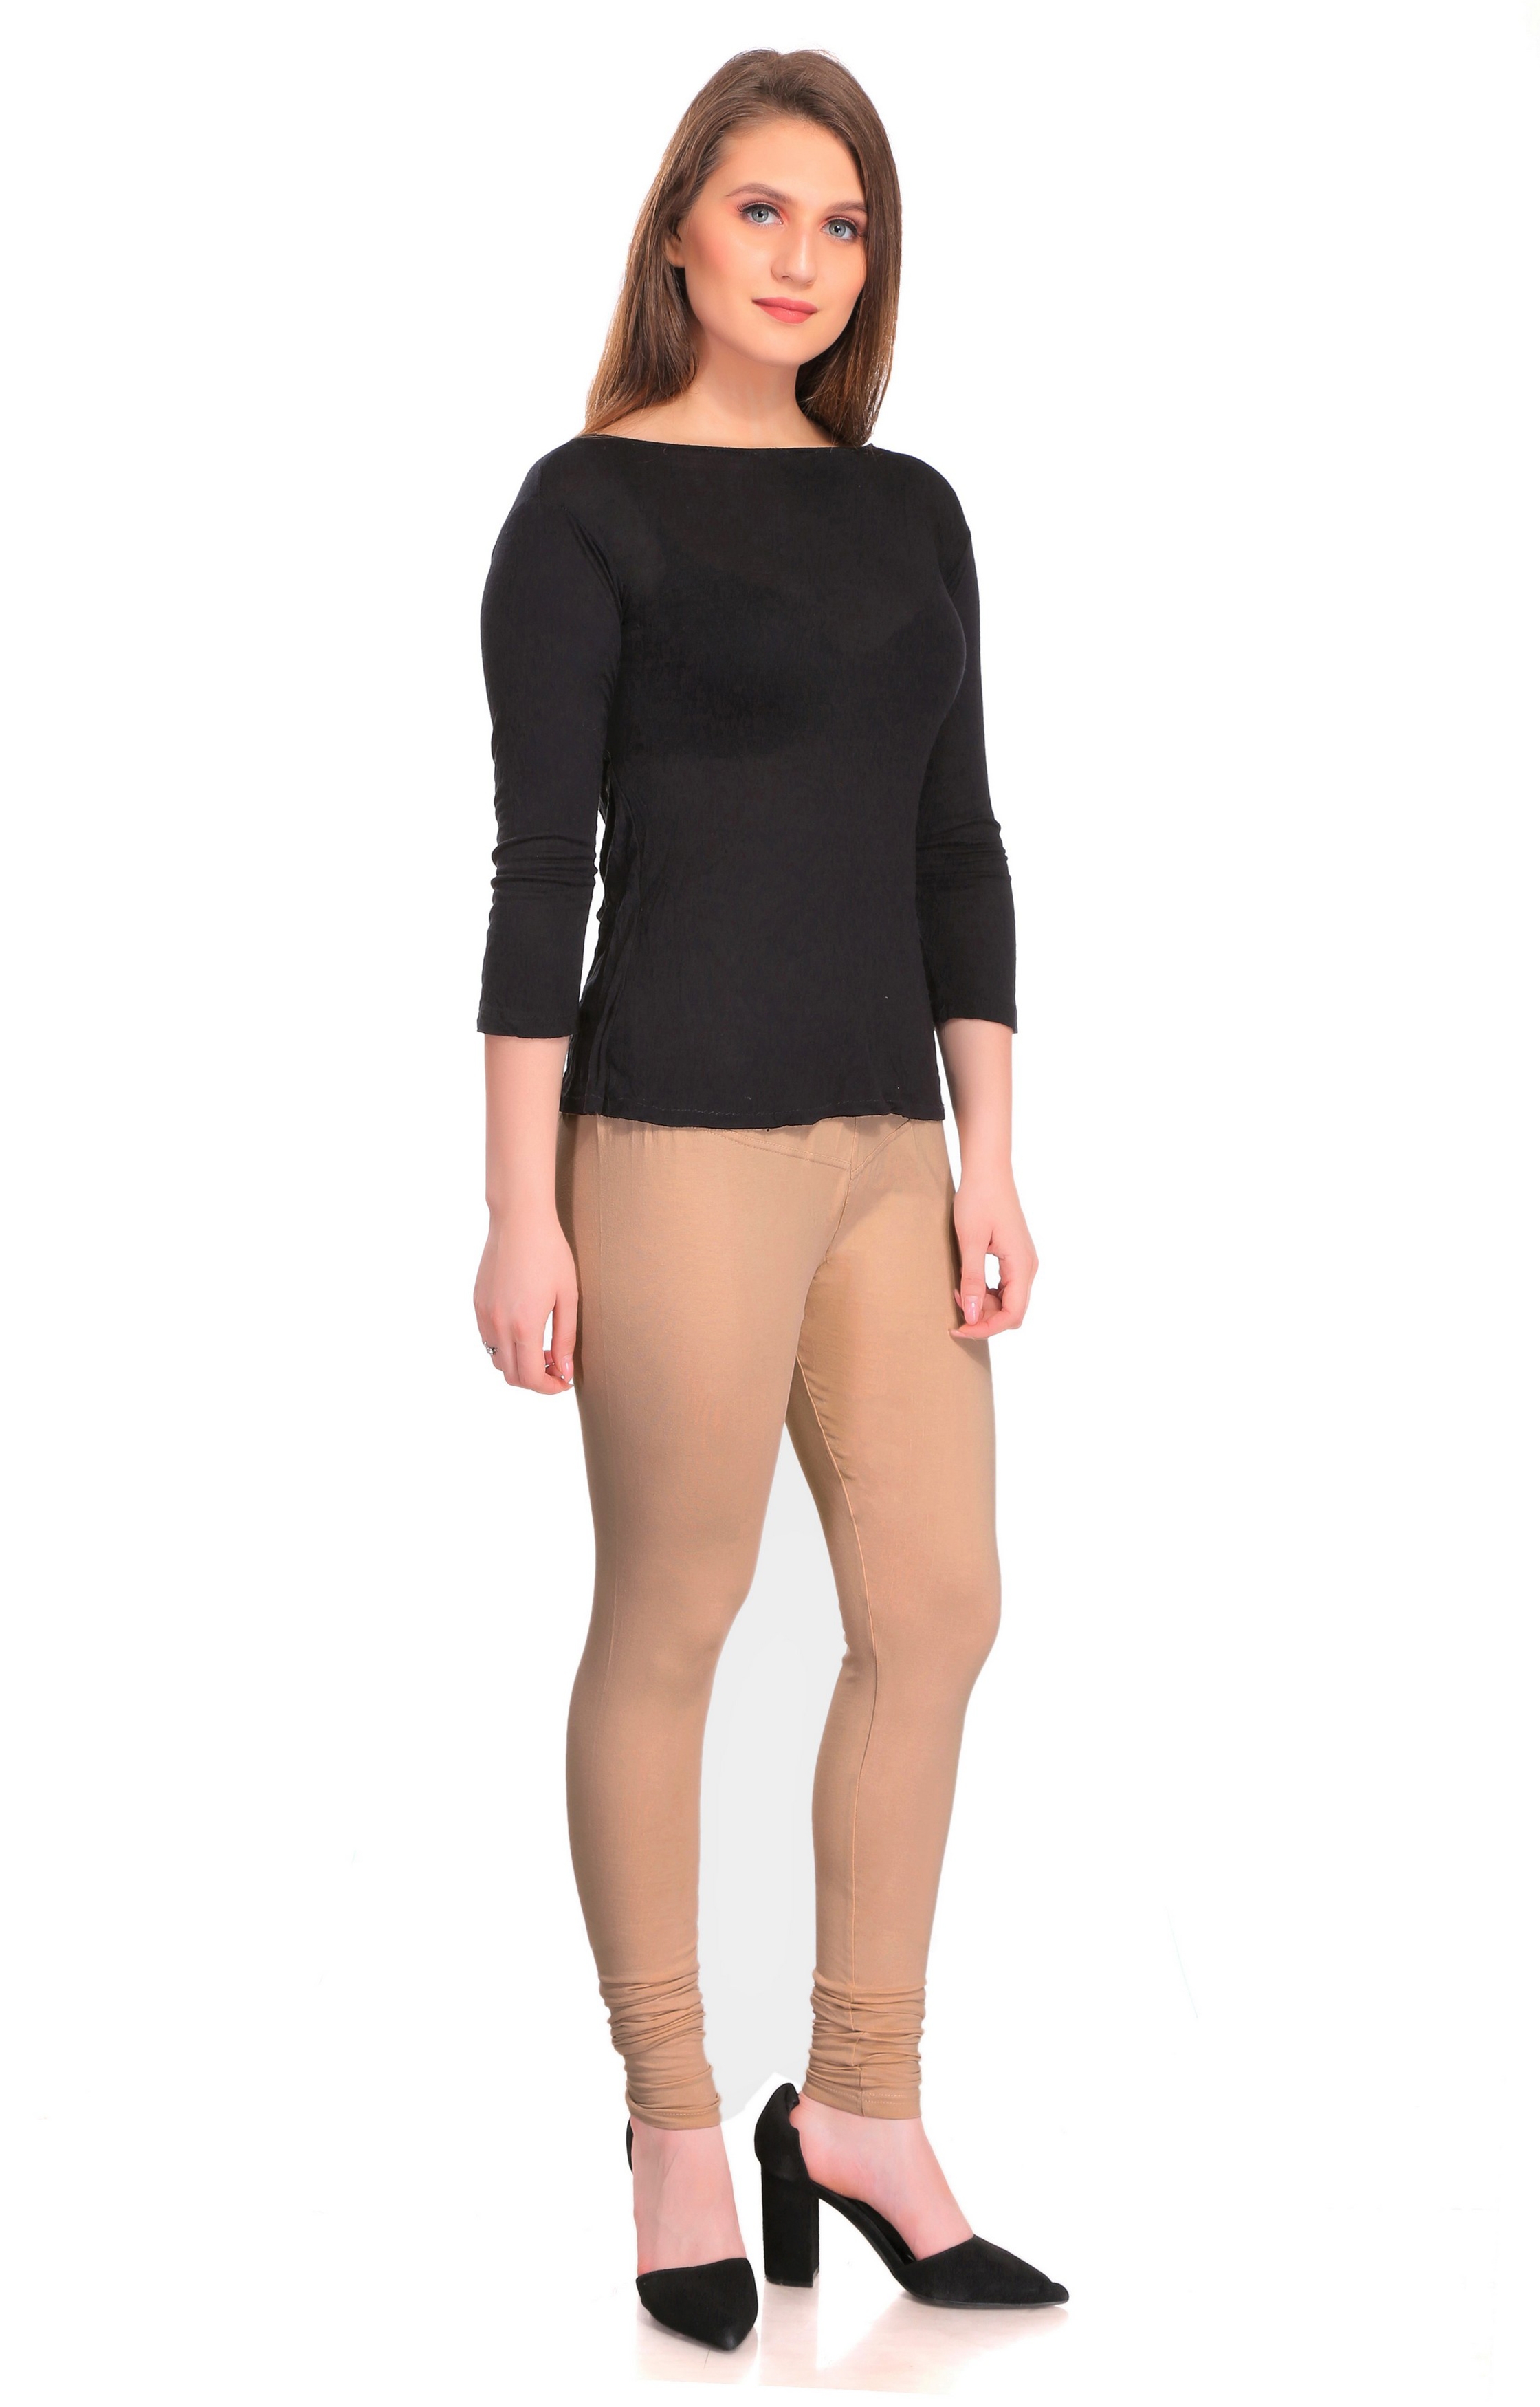 Colorfit | Colorfit Cotton Lycra Churidar Length Leggings for Women 1